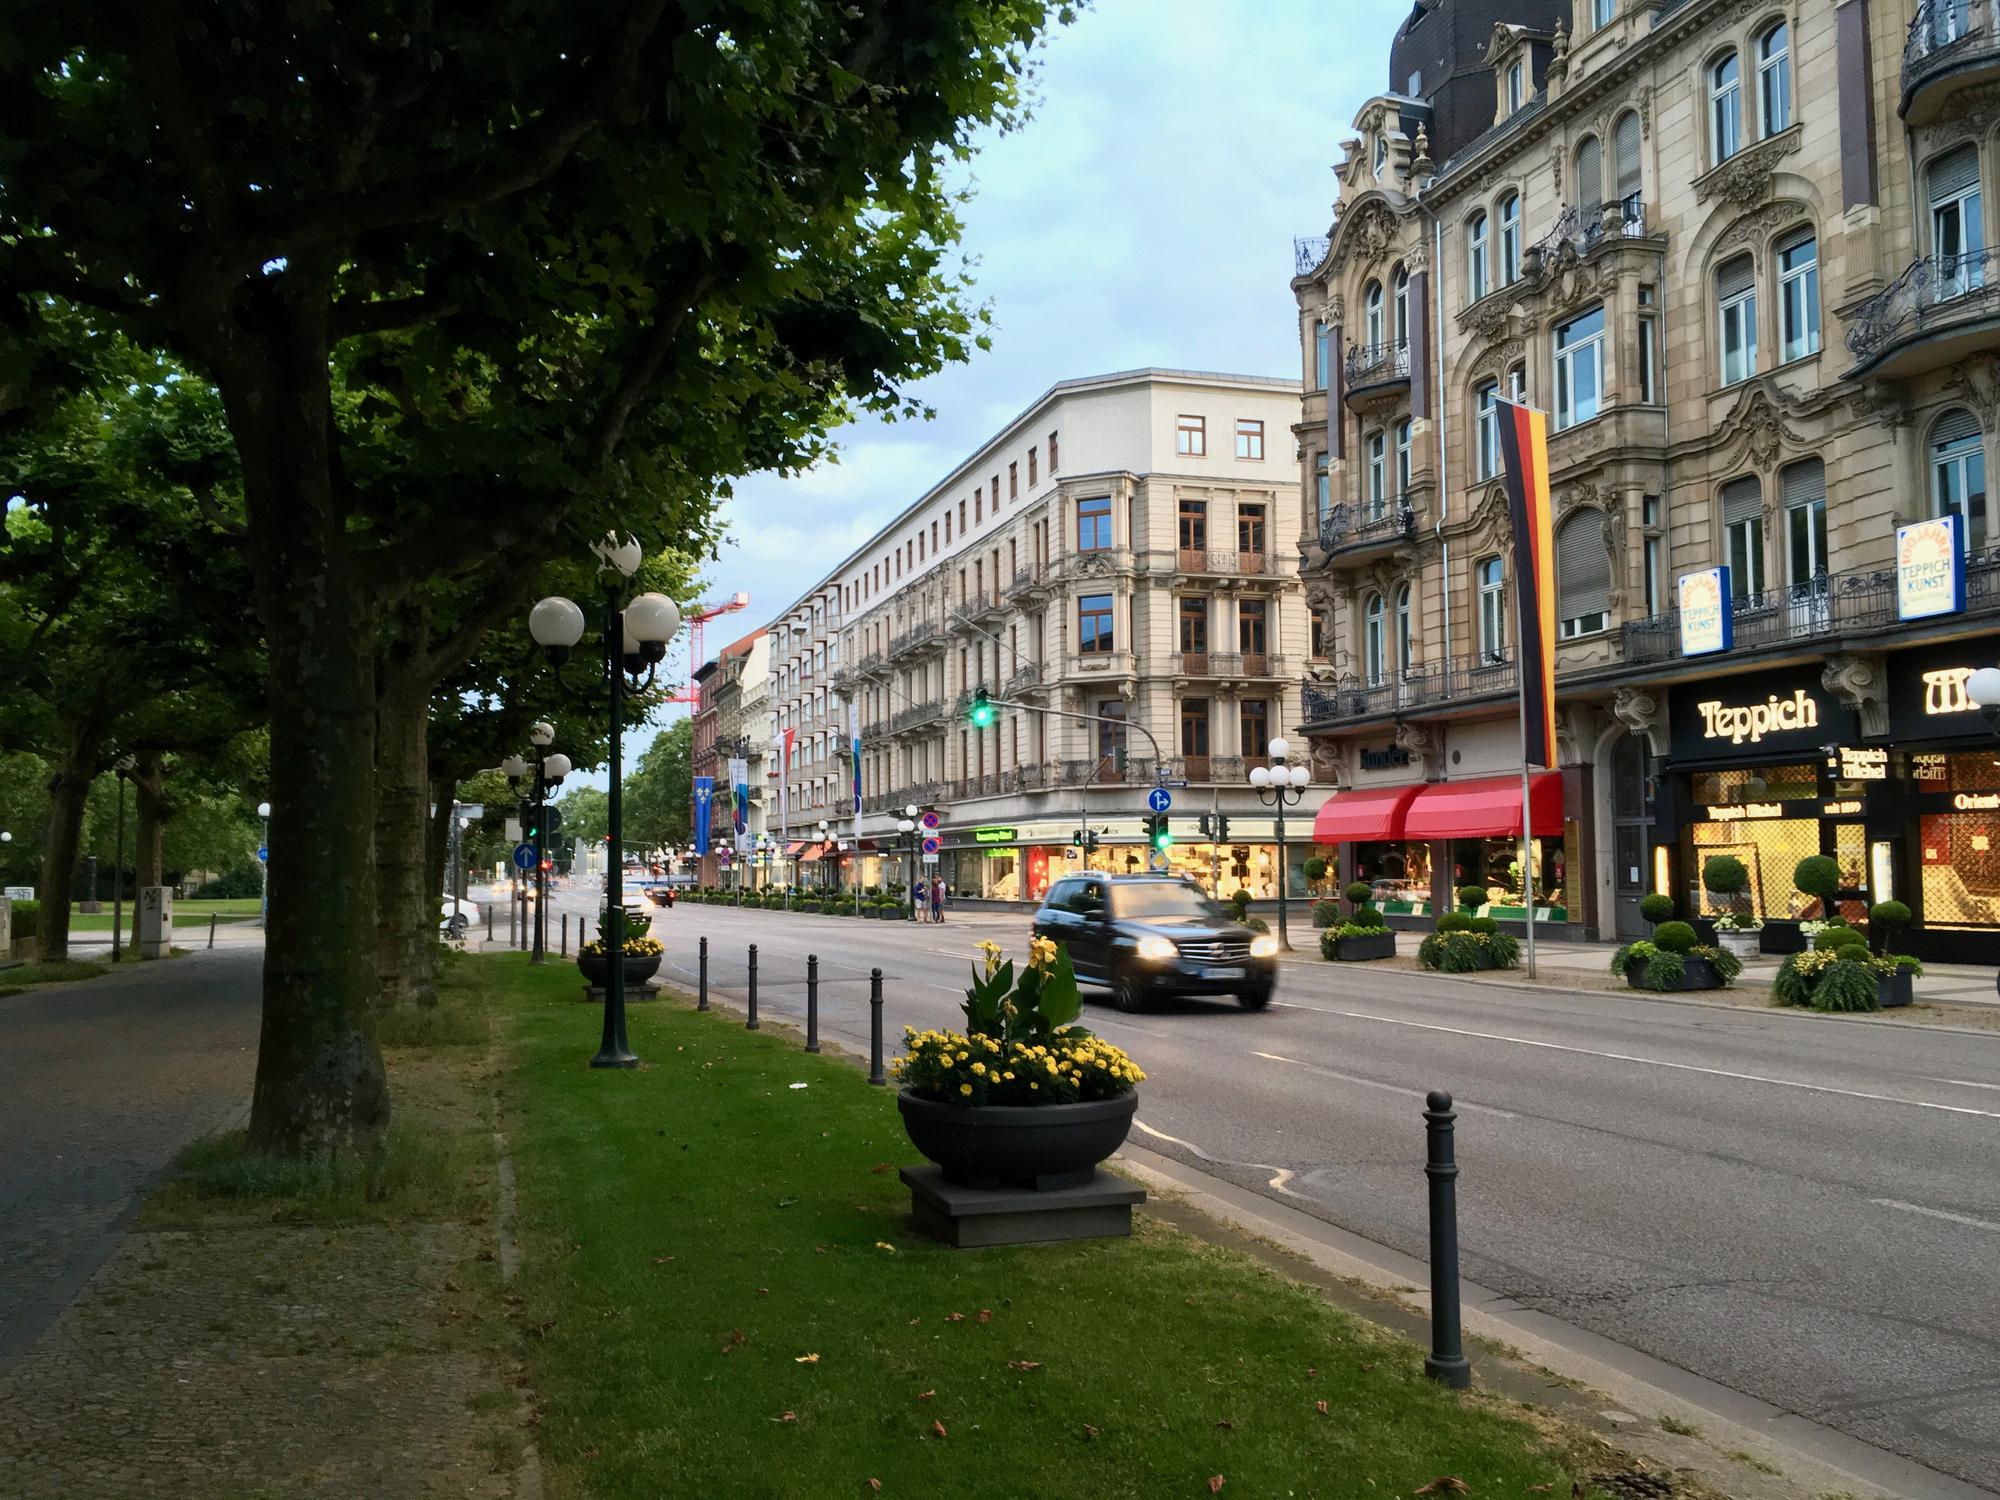 🇩🇪 Wiesbaden, Germany, July 2016.